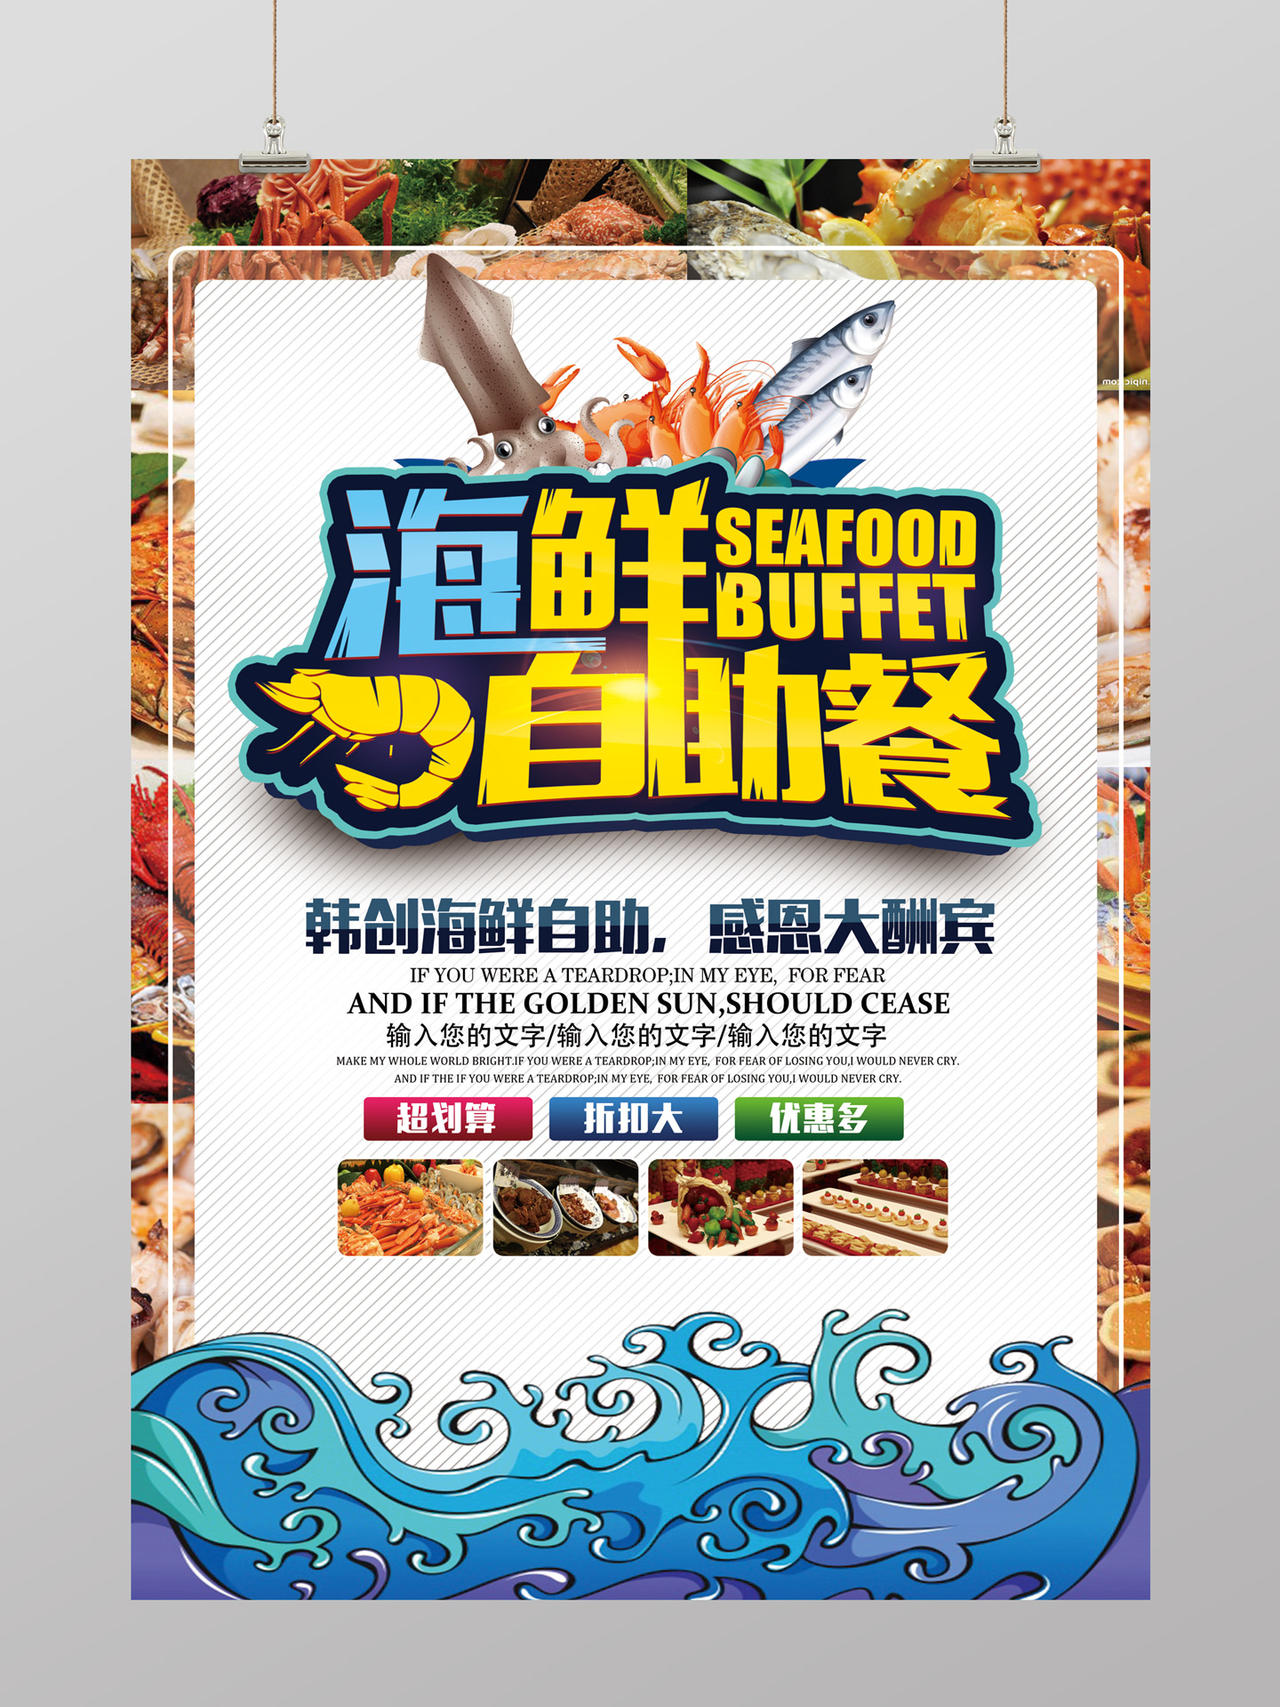 大气风海鲜自助餐烧烤美食海报设计